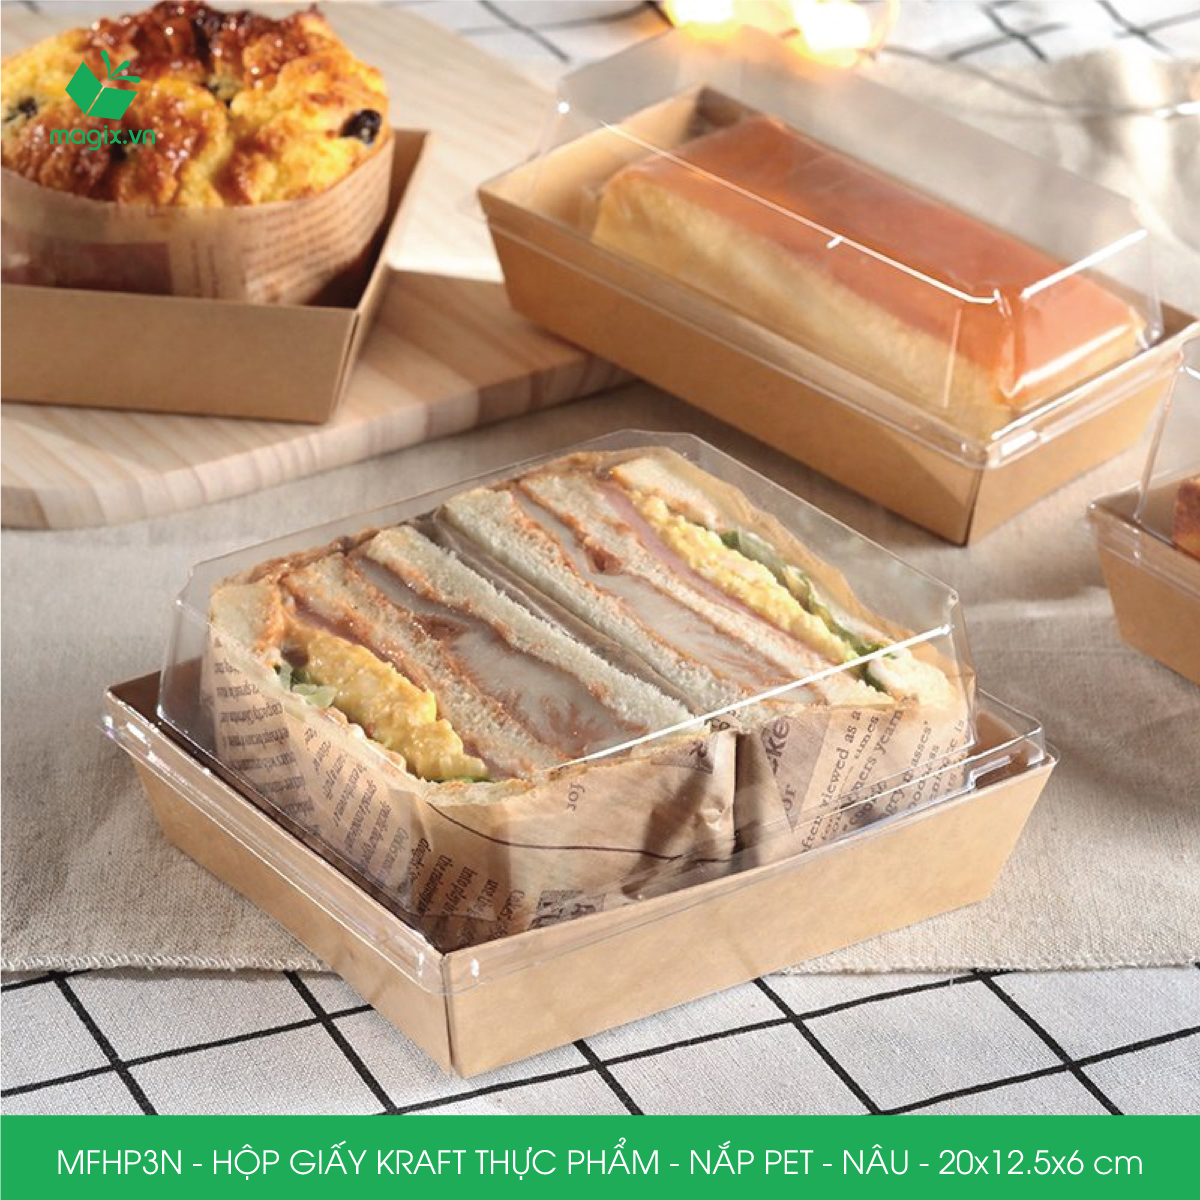 MFHP3N - 20x12.5x6 cm - 100 hộp giấy kraft thực phẩm màu nâu nắp Pet, hộp giấy chữ nhật đựng thức ăn, hộp bánh nắp trong